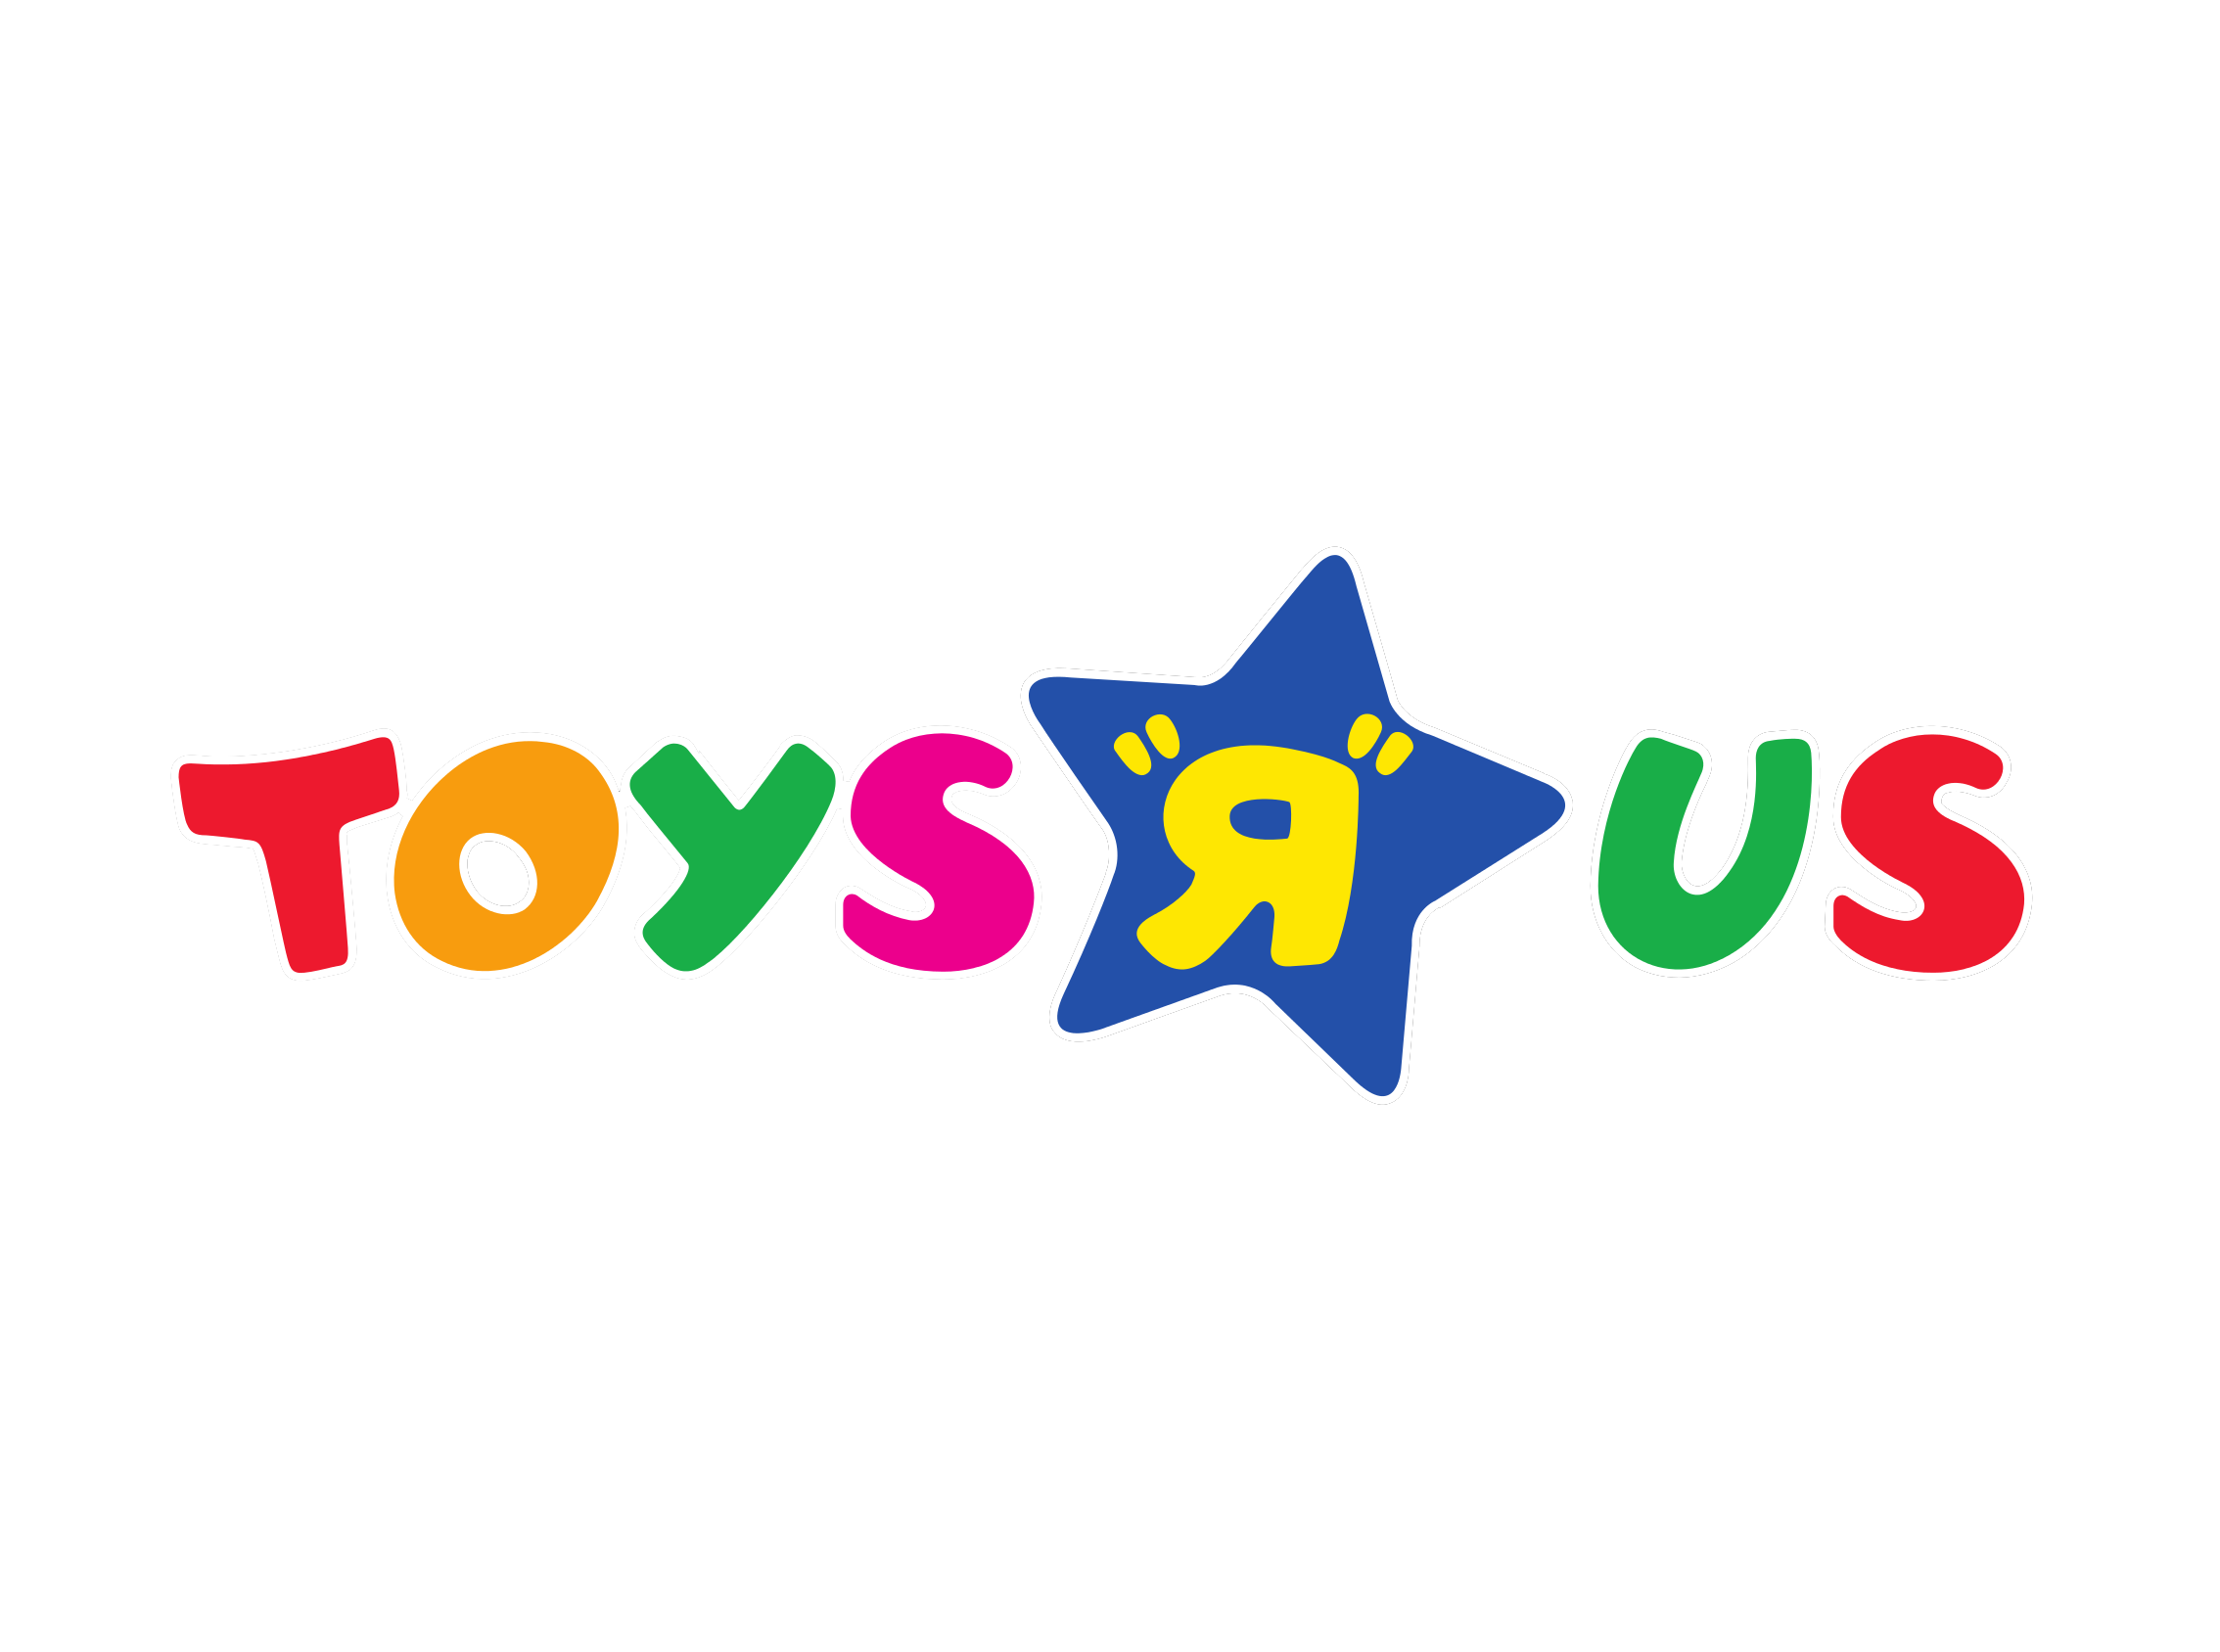 Toys 4 us. Магазин игрушек Toys r us. Логотип игрушки. Логотип магазина детских игрушек. Логотип TOYSRUS.